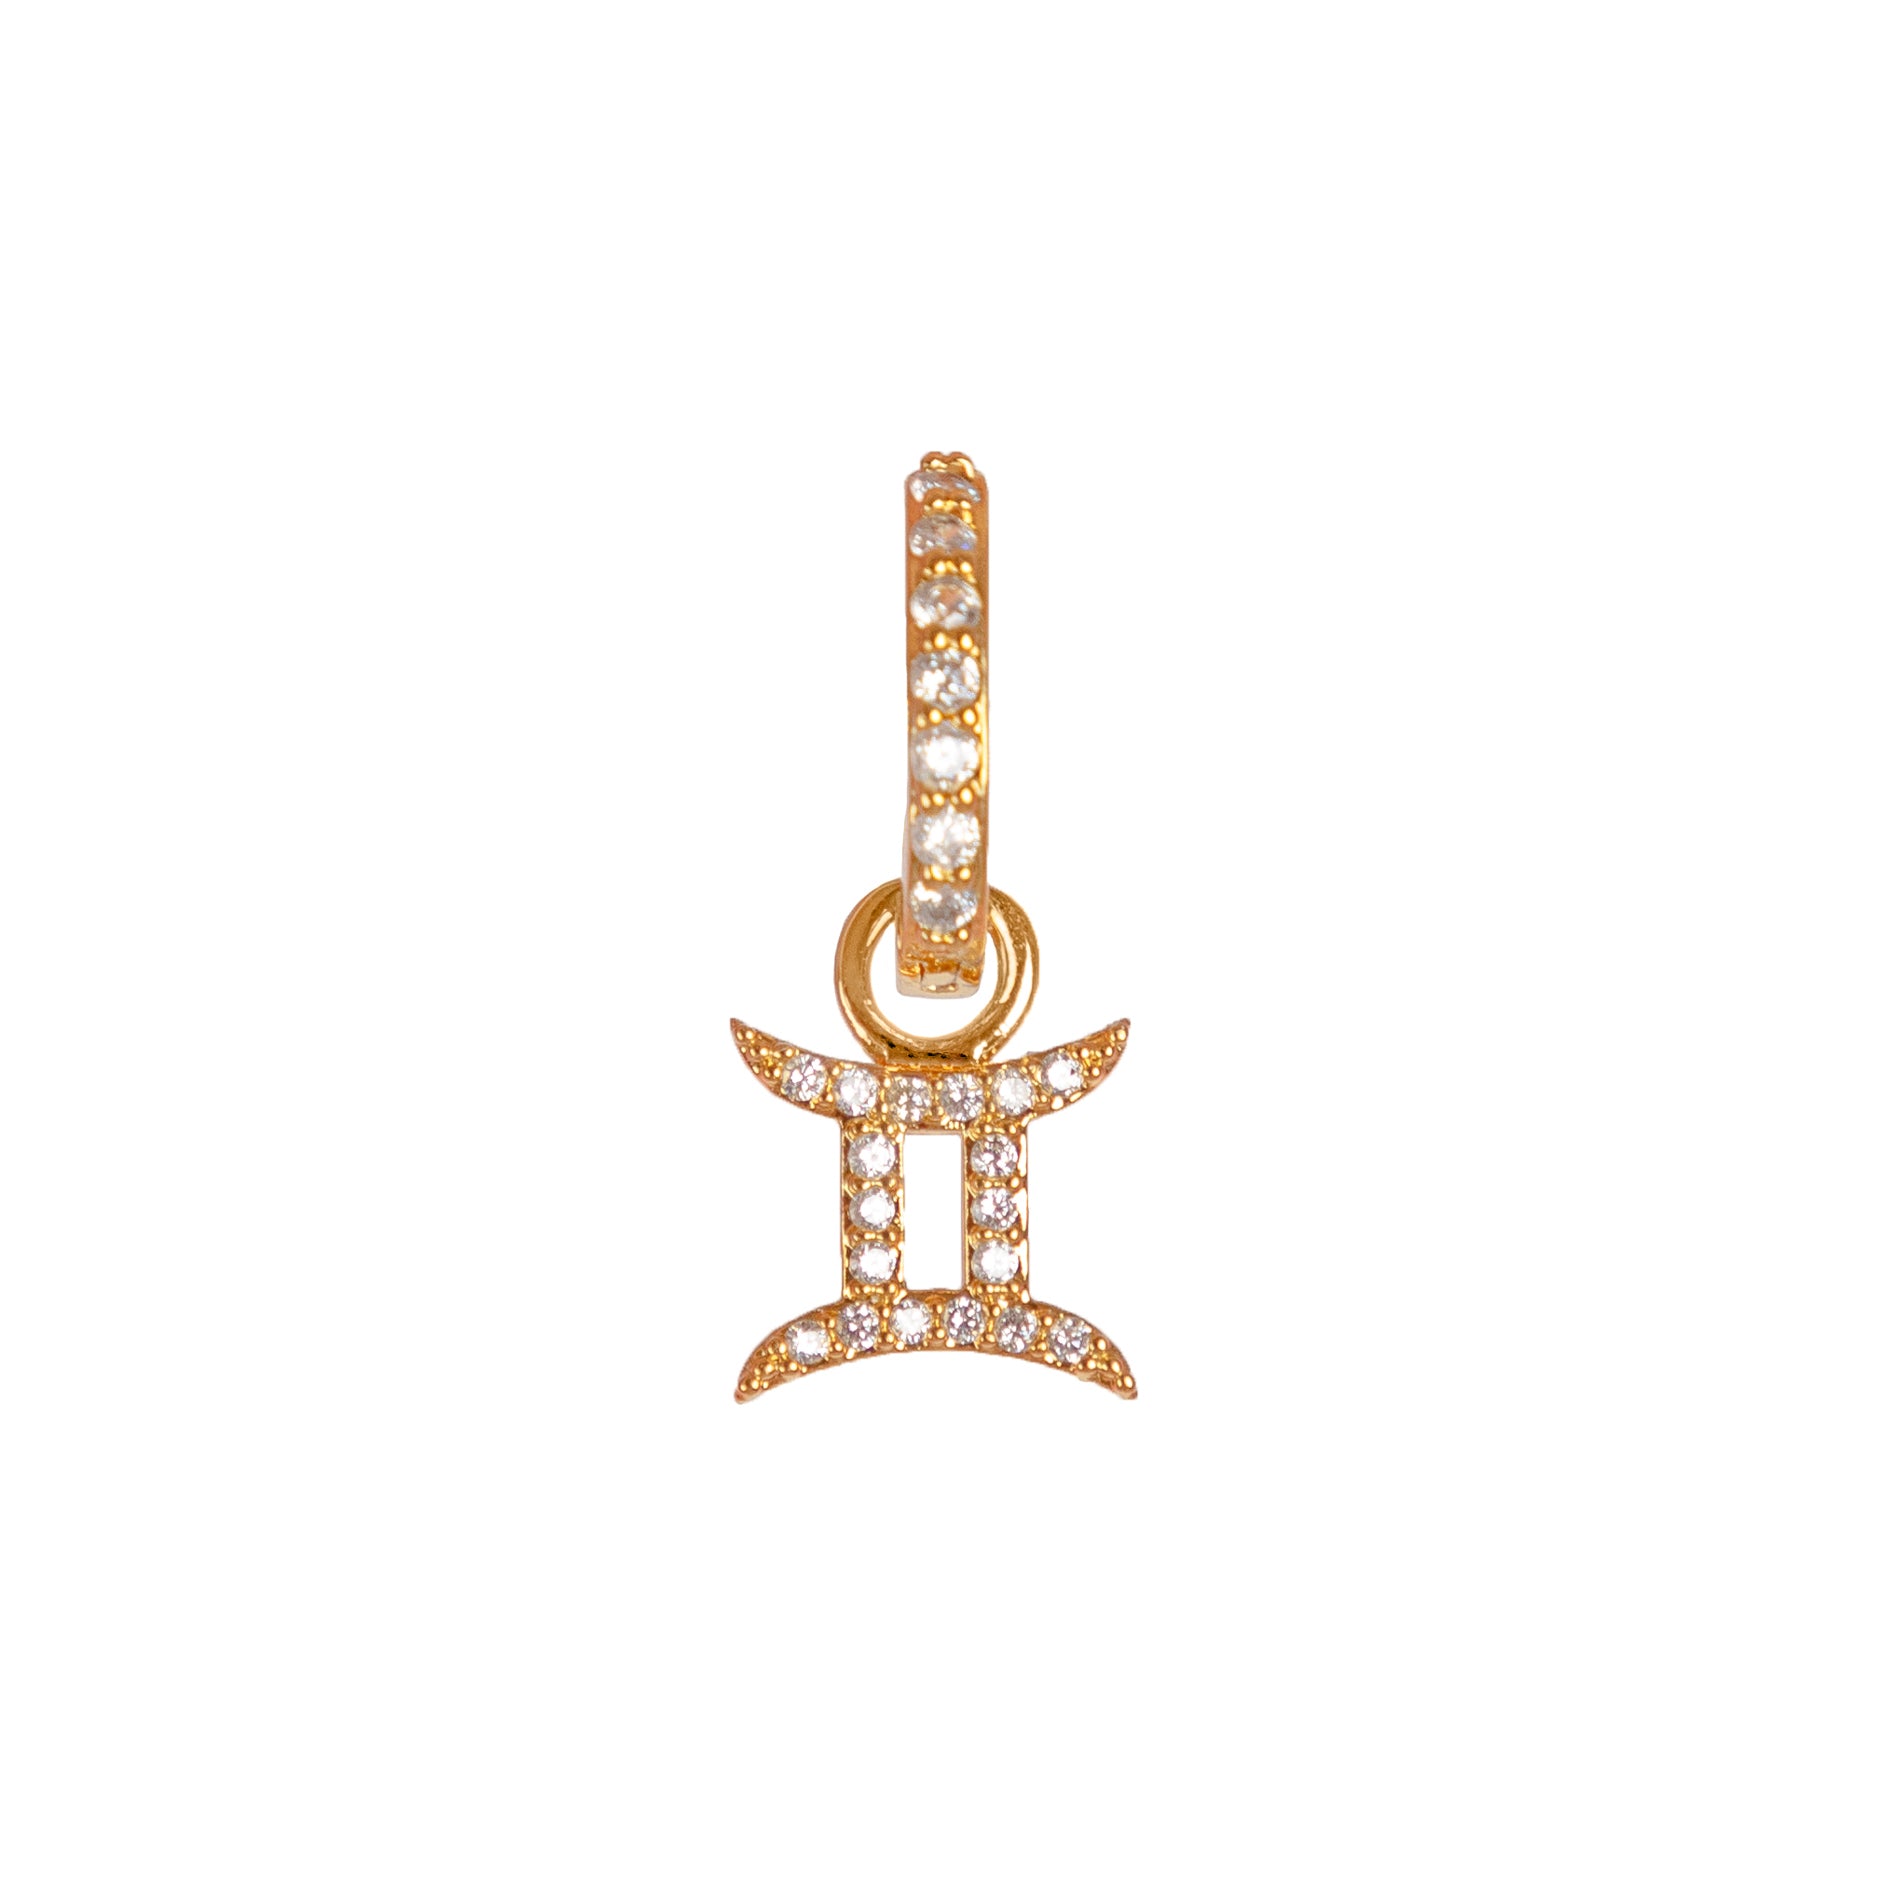 ZODIAC JUNKIE CHARM - The Highline Jewelry